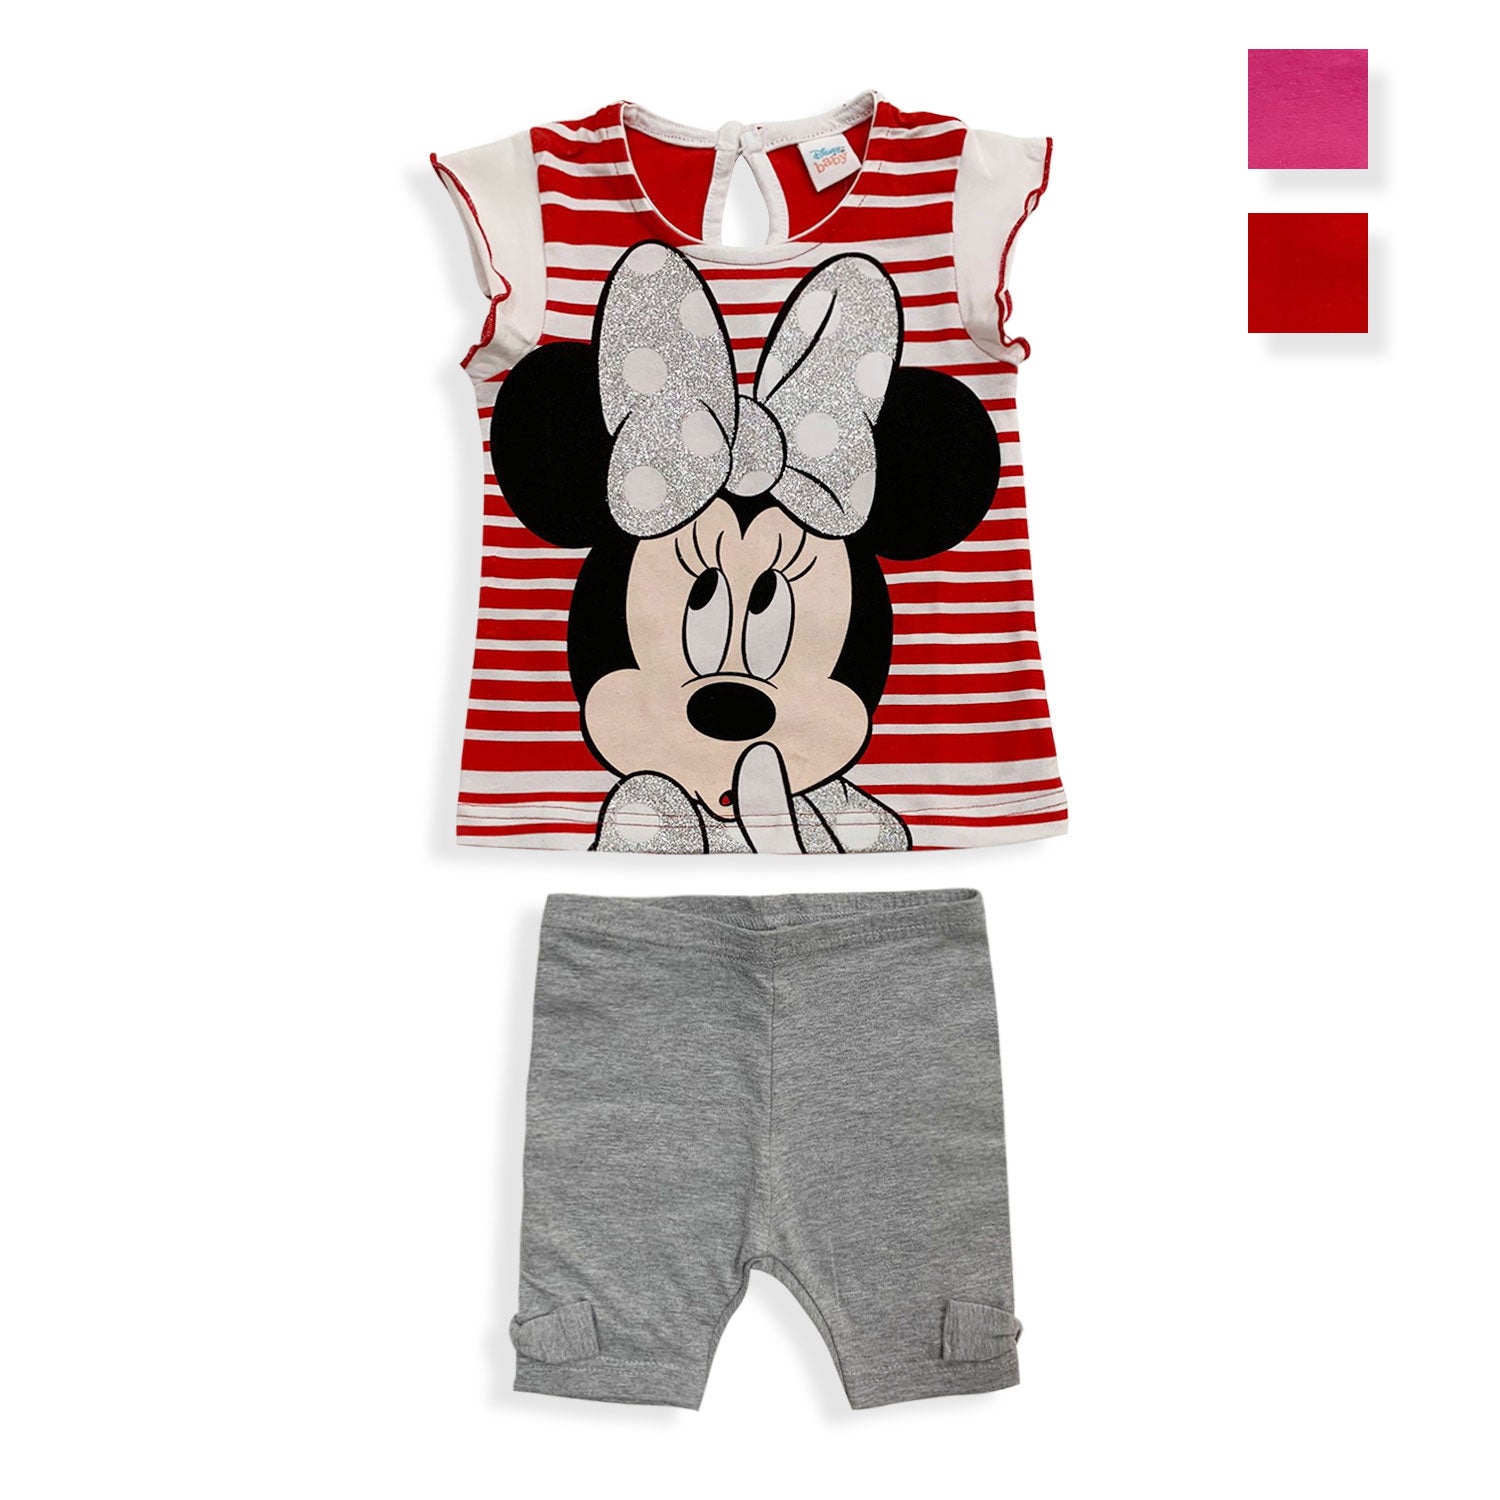 Pigiama Disney Minnie Mouse in cotone mezze maniche neonato bambina 5493